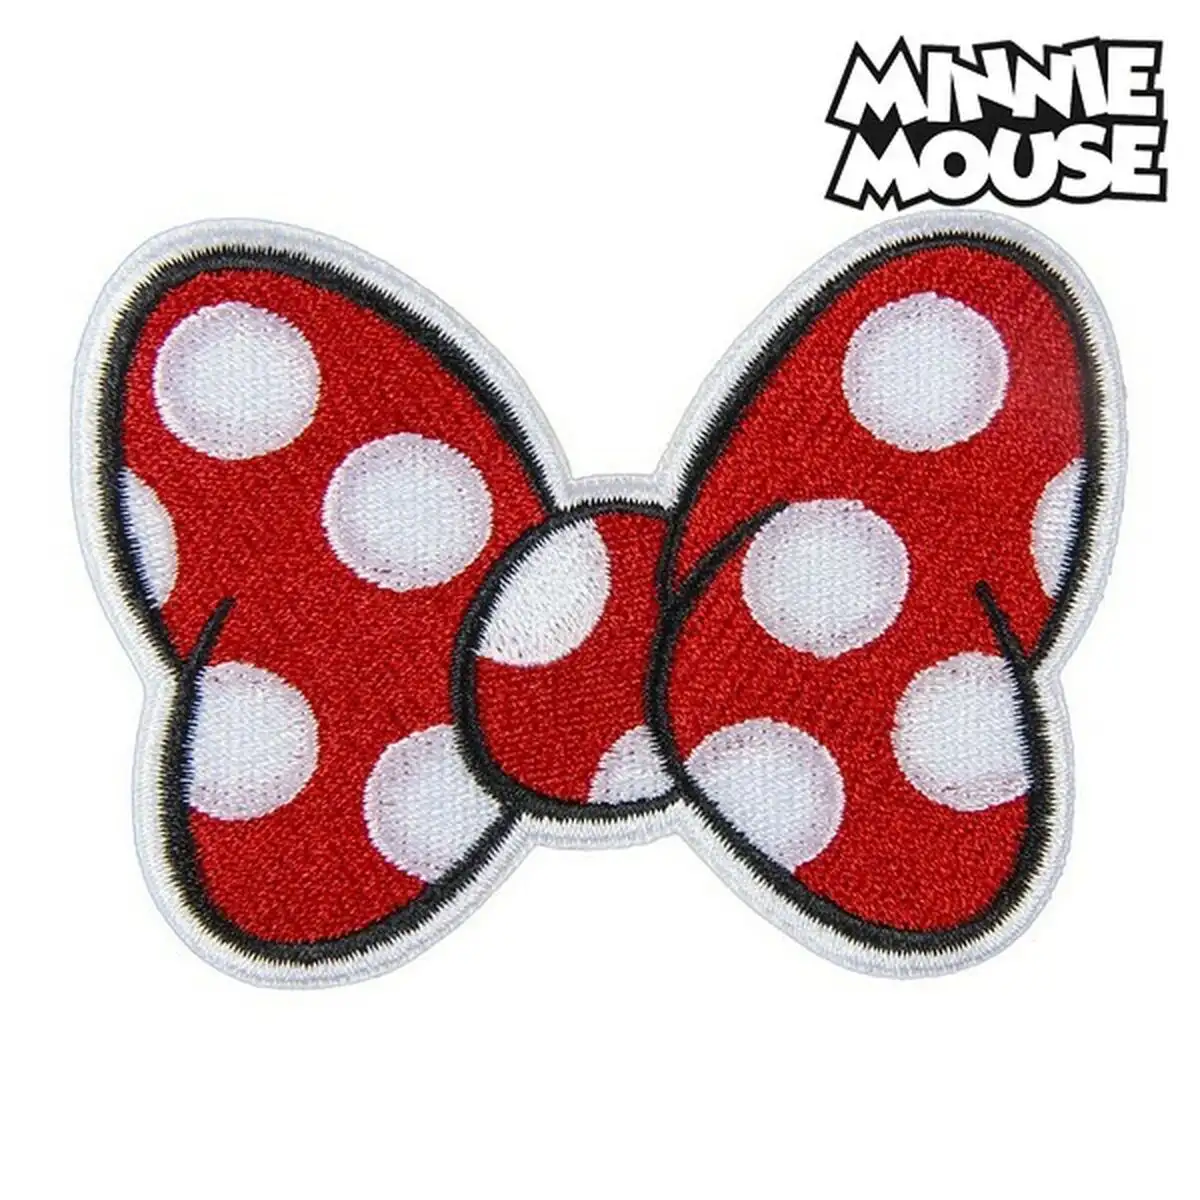 Patch minnie mouse rouge polyester 9 5 x 14 5 x cm _7445. DIAYTAR SENEGAL - Là où Chaque Clic Compte. Parcourez notre boutique en ligne et laissez-vous guider vers des trouvailles uniques qui enrichiront votre quotidien.